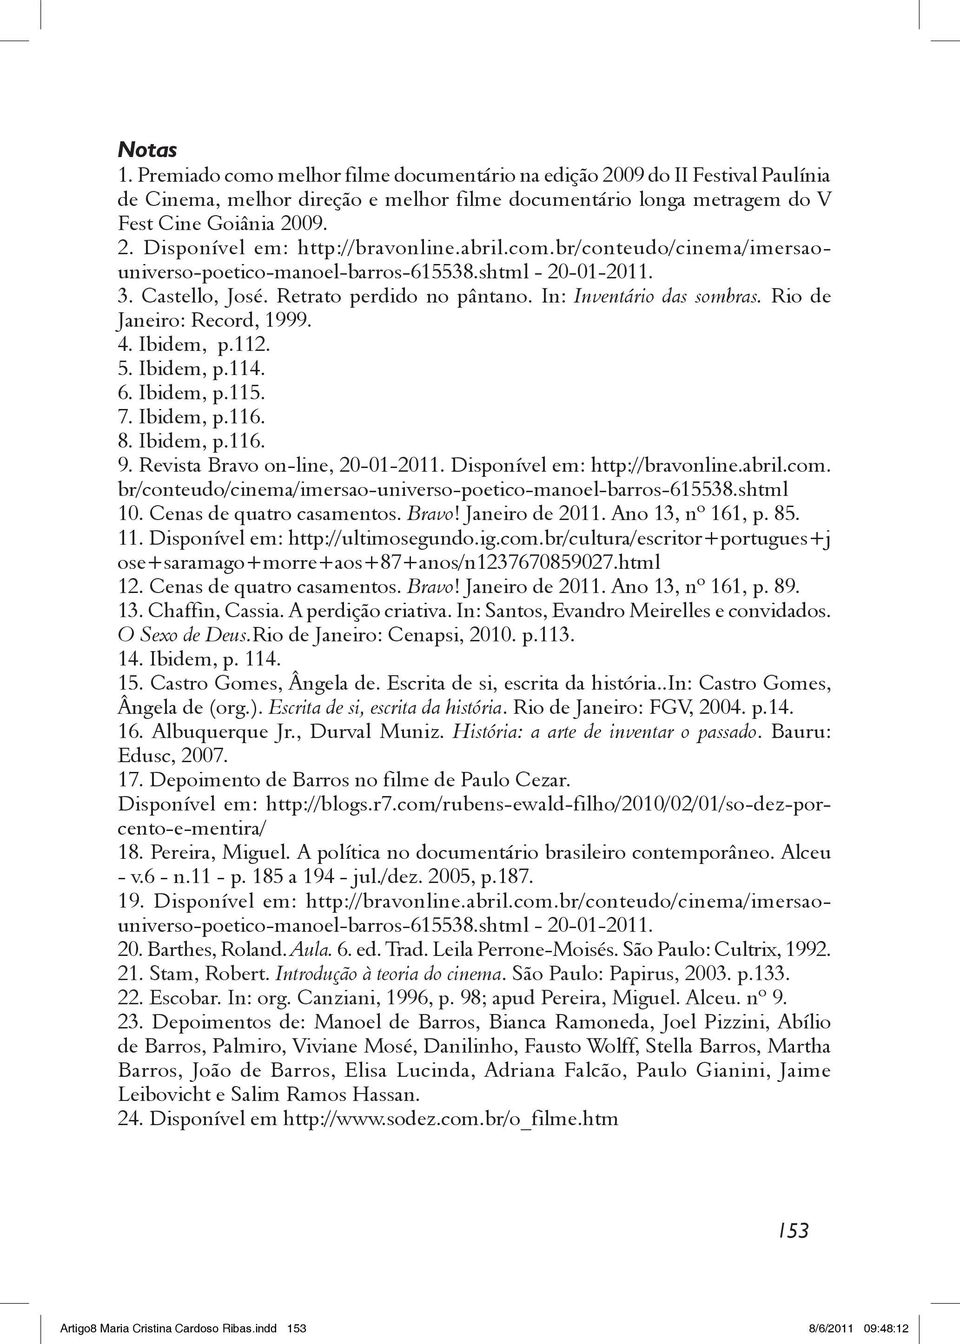 4. Ibidem, p.112. 5. Ibidem, p.114. 6. Ibidem, p.115. 7. Ibidem, p.116. 8. Ibidem, p.116. 9. Revista Bravo on-line, 20-01-2011. Disponível em: http://bravonline.abril.com.